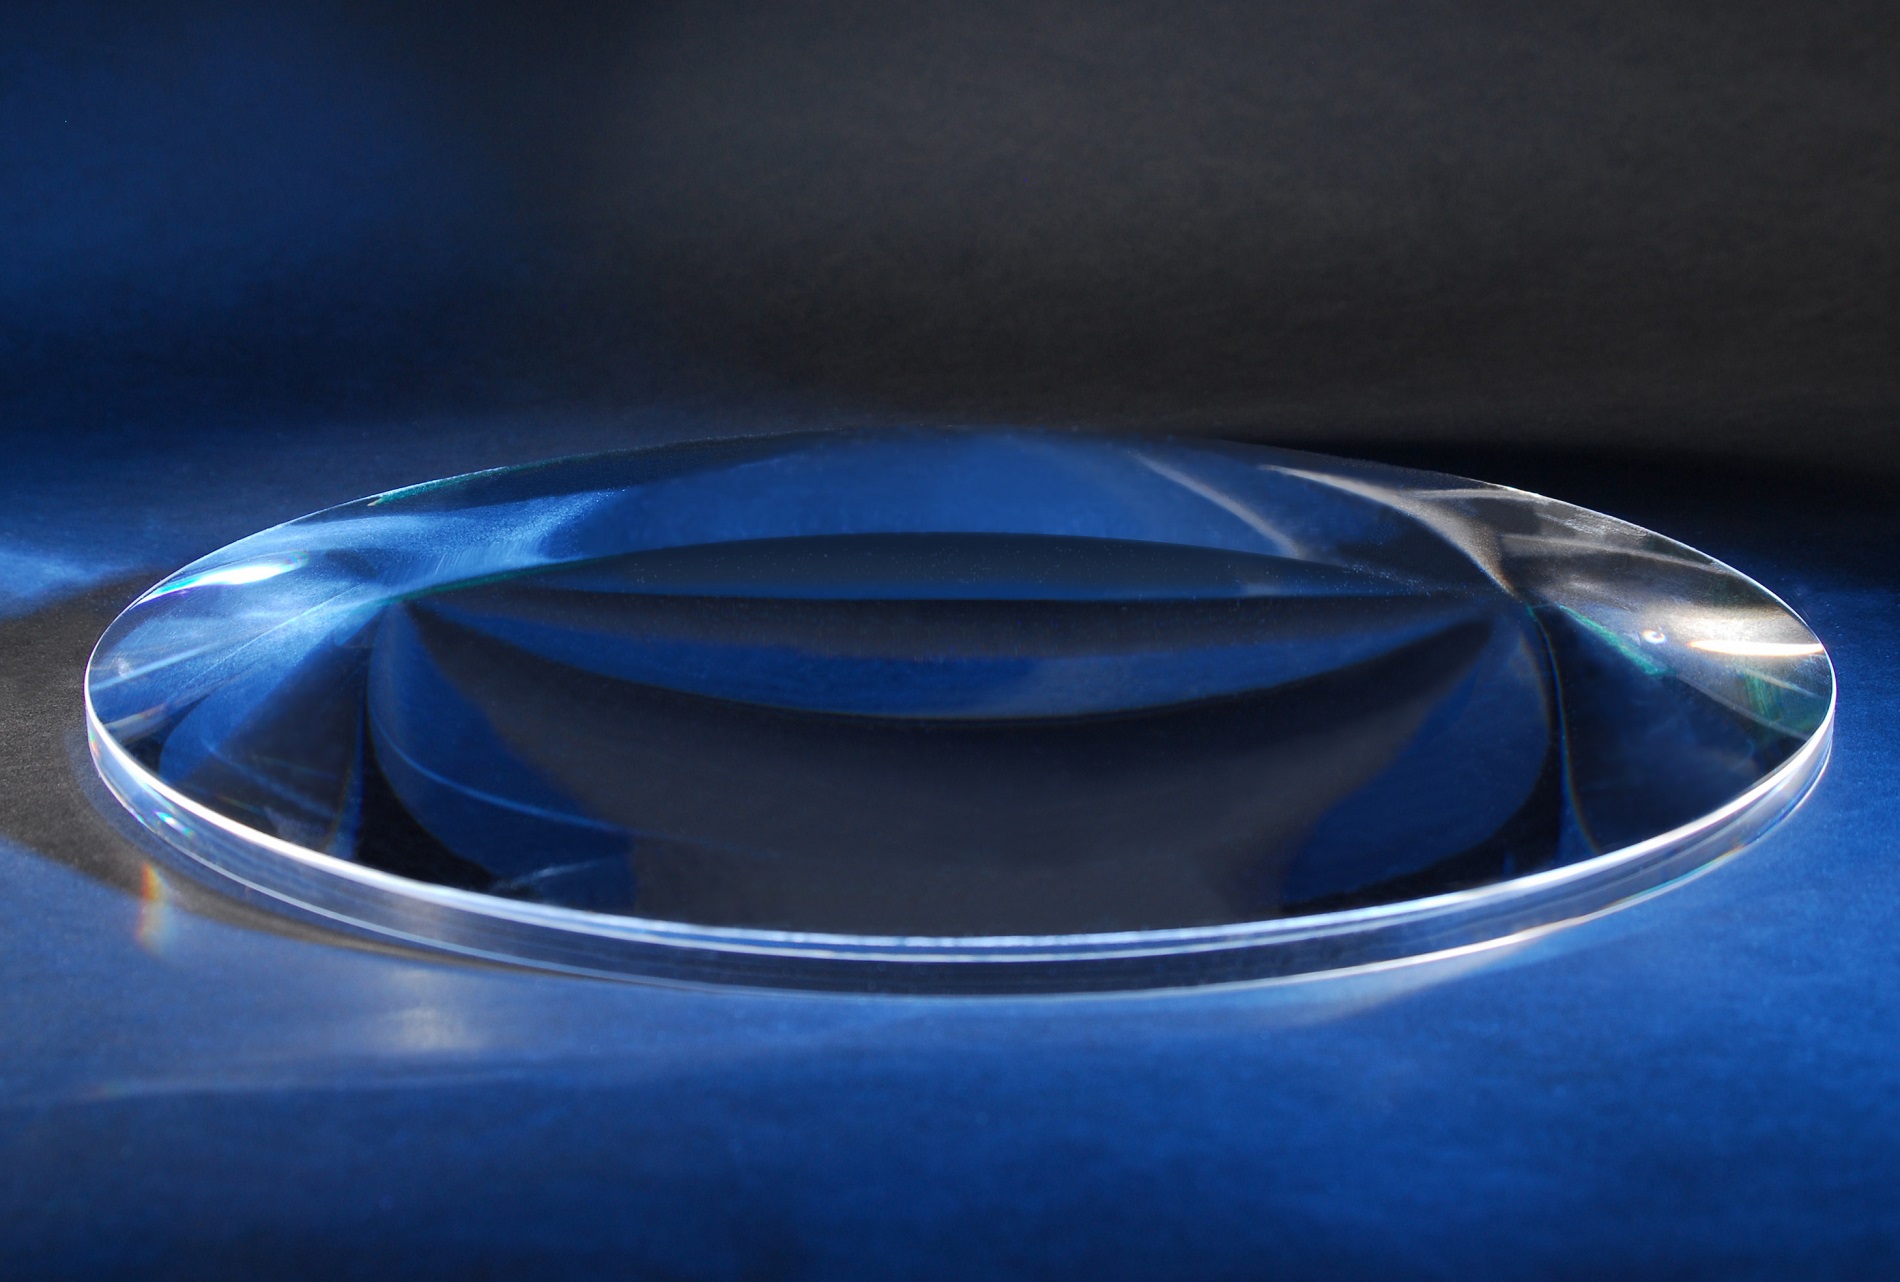 large diameter aspheric lens